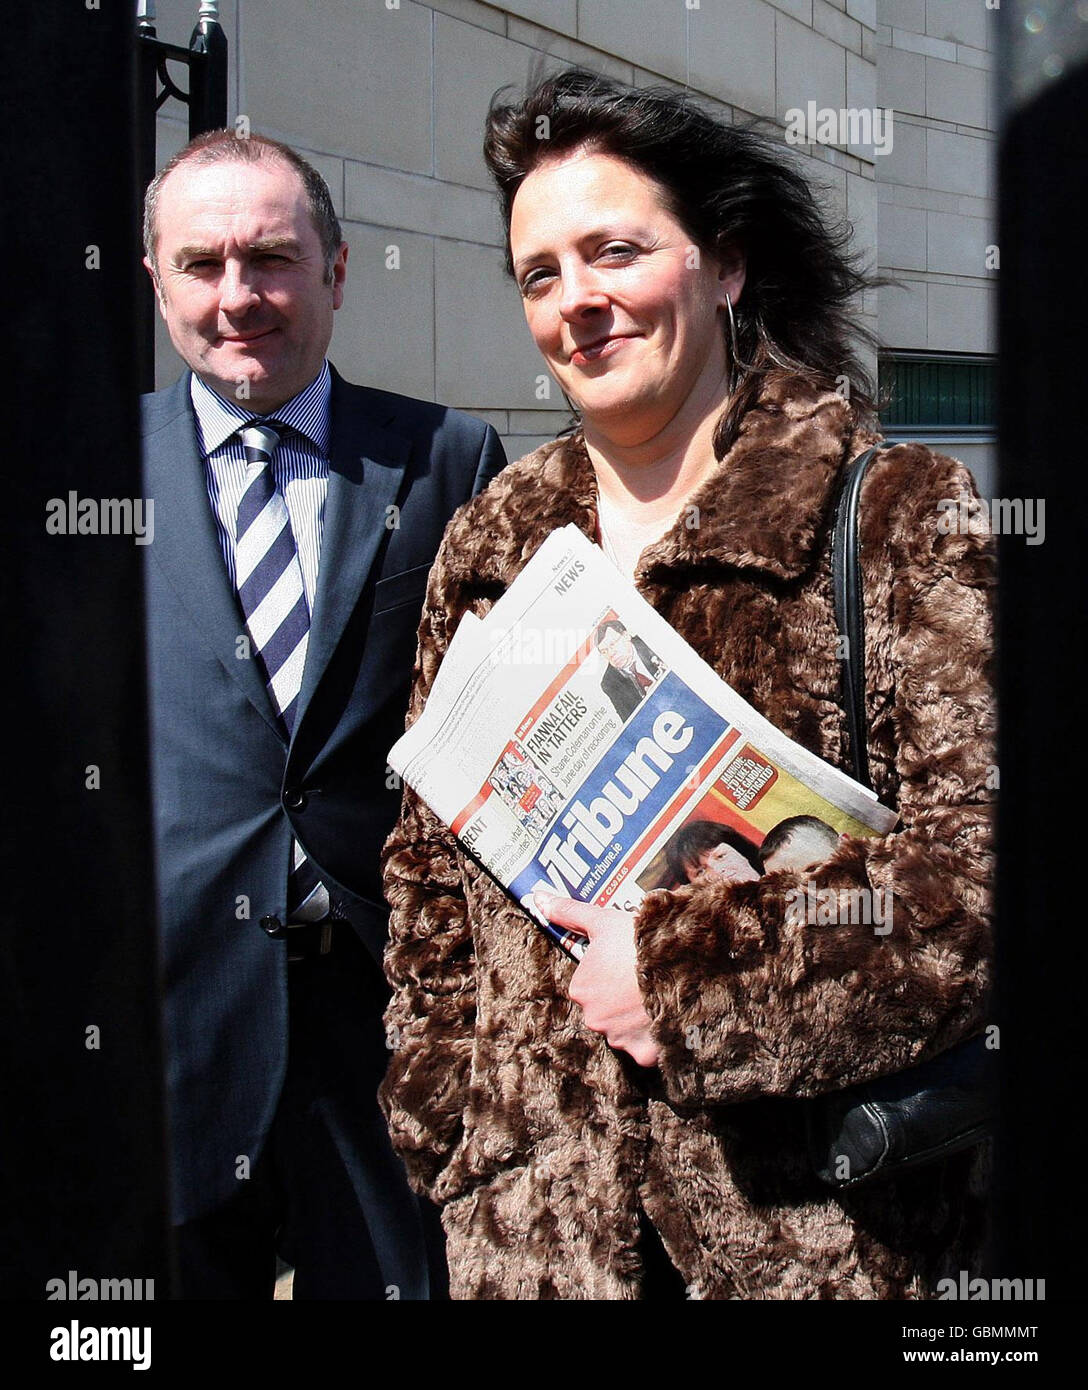 Suzanne Breen (à droite), rédactrice en chef du Sunday Tribune publié à Dublin, qui refuse de renoncer aux documents liés à deux articles qu'elle a écrits sur le groupe républicain dissident The Real IRA, avec son avocat Joe Rice, devant le tribunal de Belfast Laganside. Banque D'Images